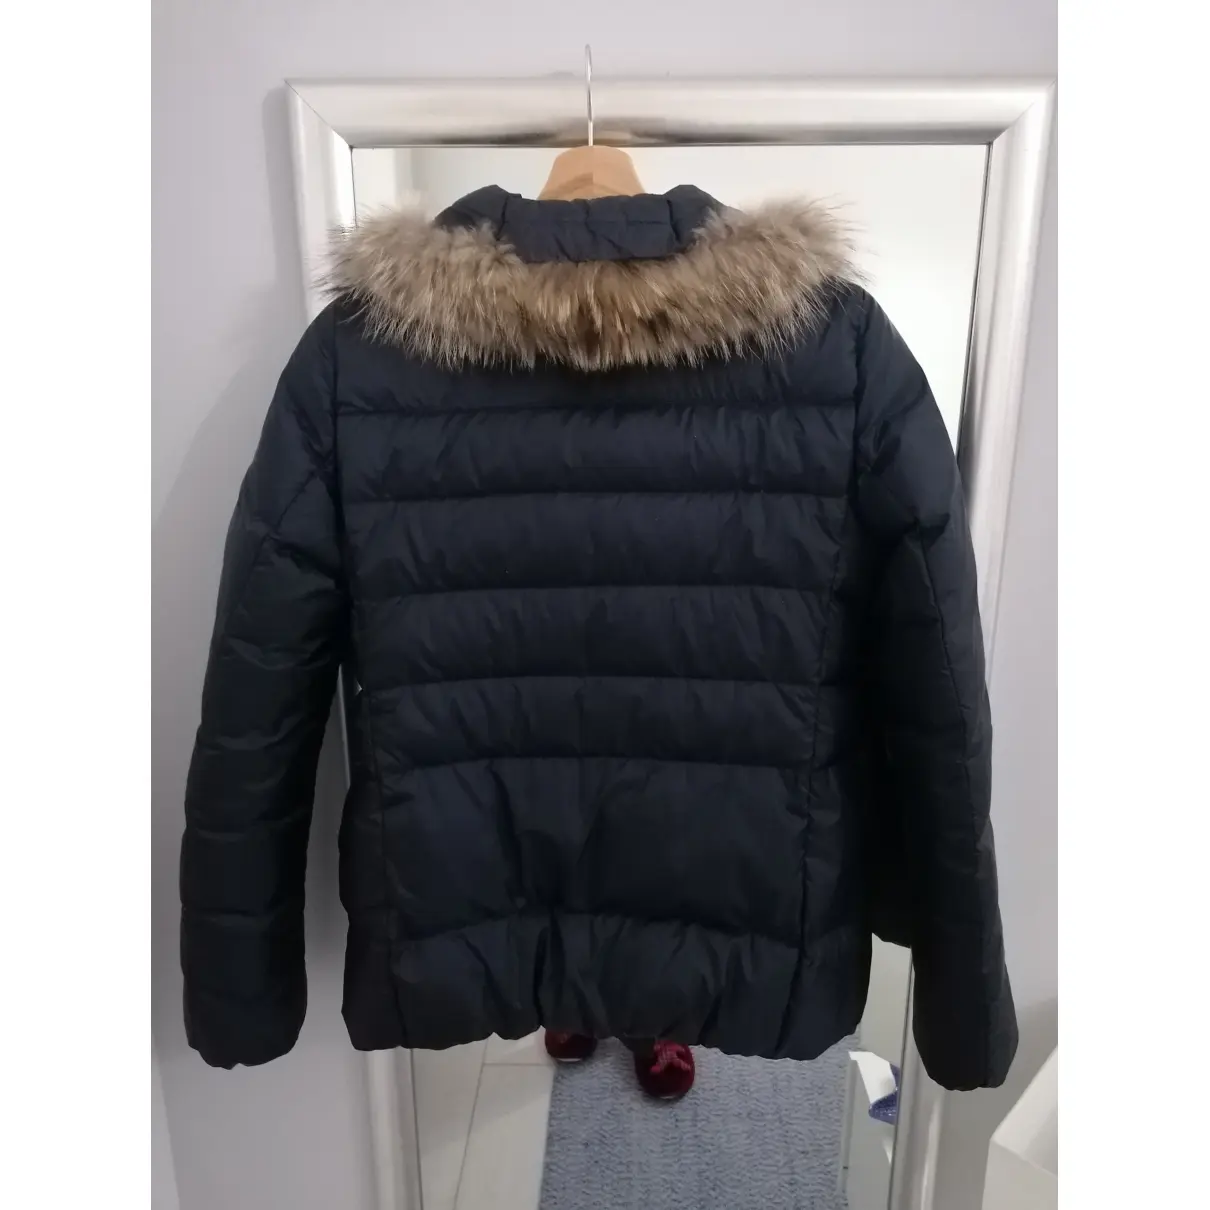 Buy Peuterey Tweed jacket online